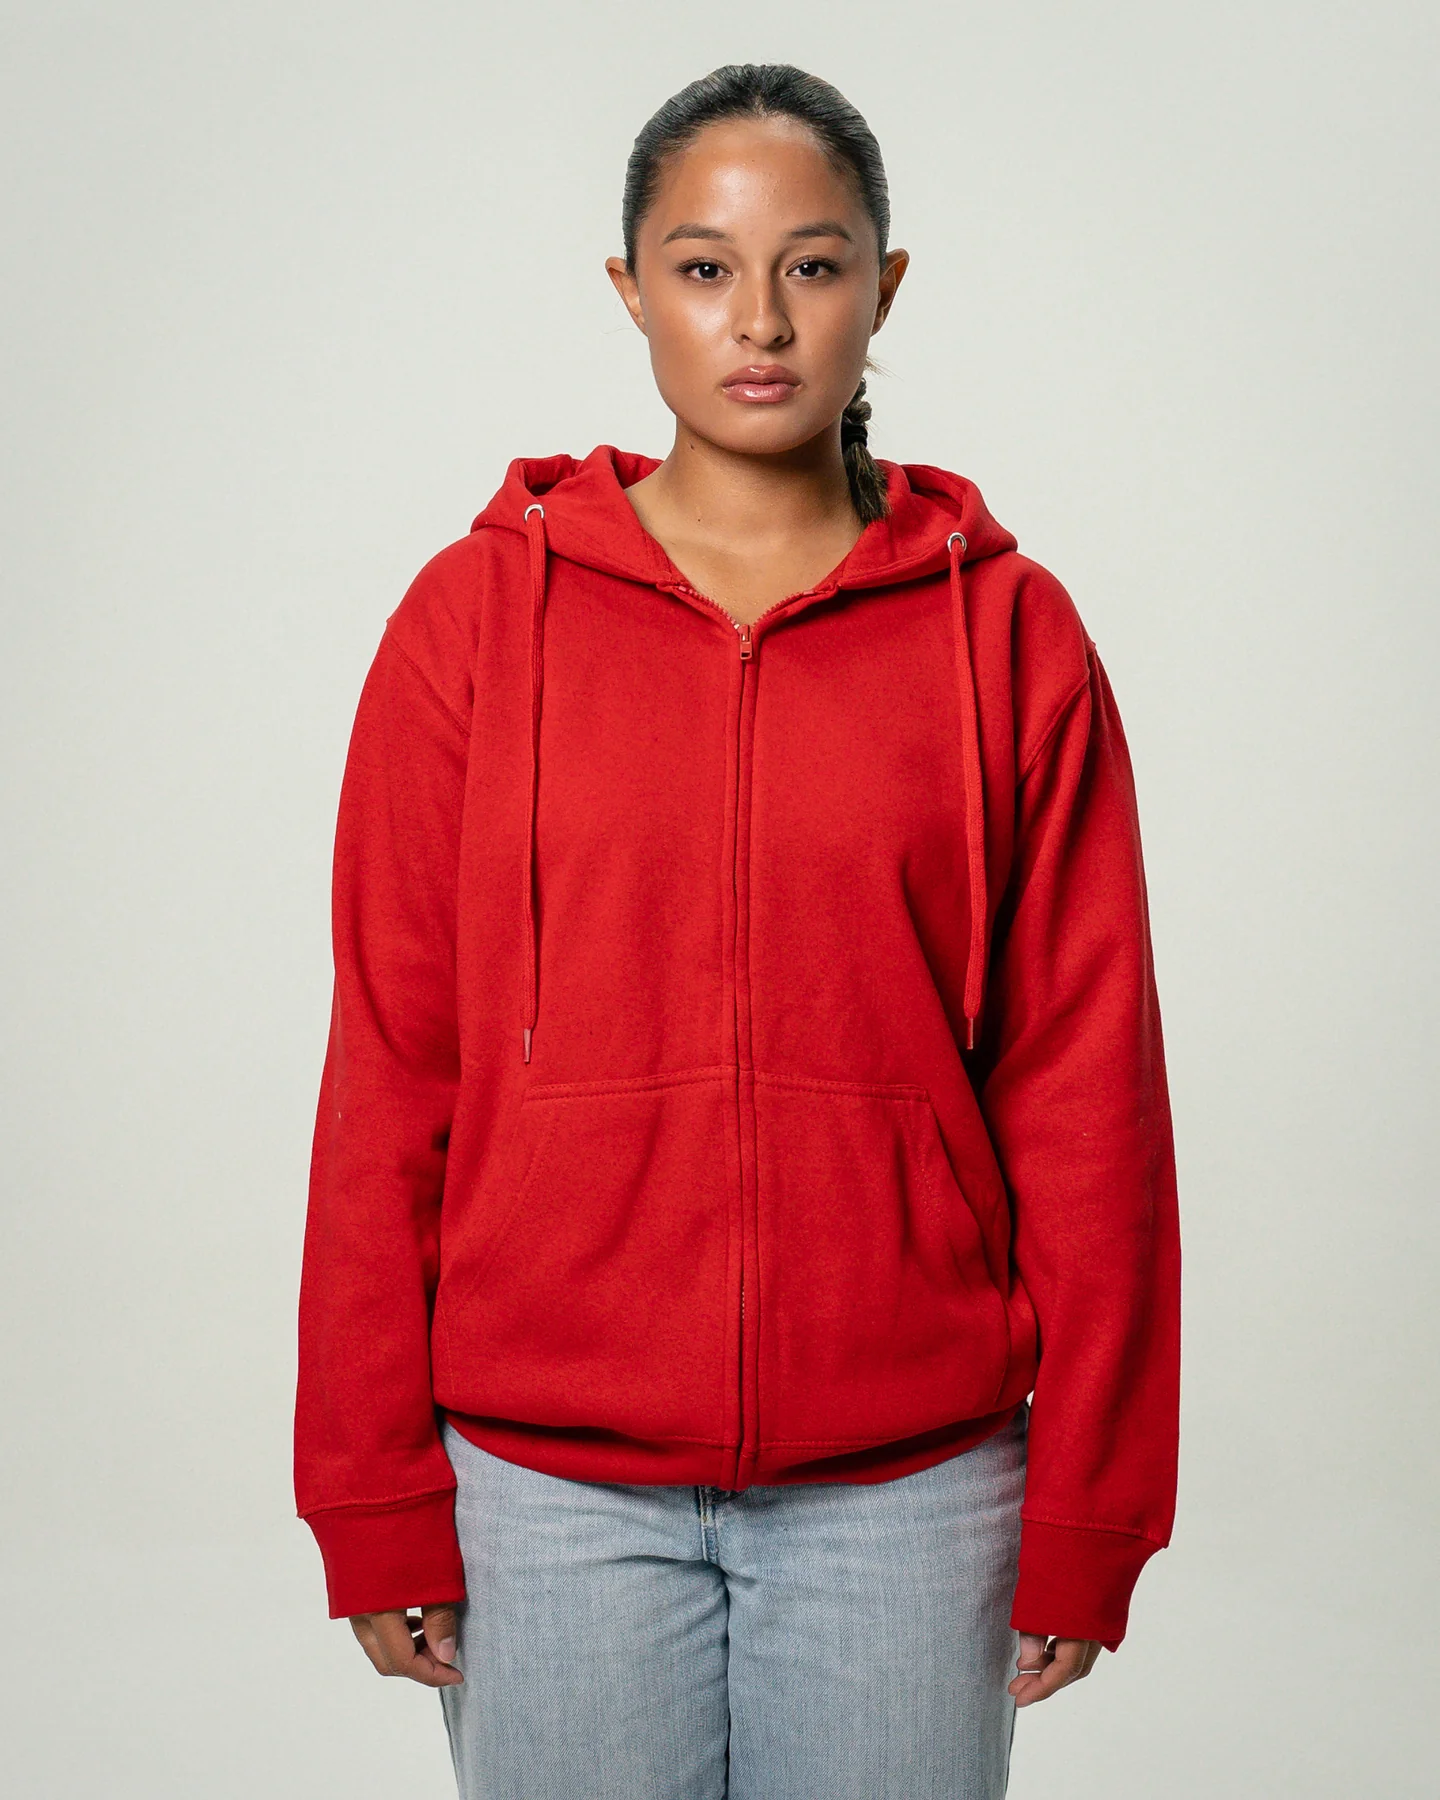 Women's Heavy Blend Full-Zip Sweatshirt Red2